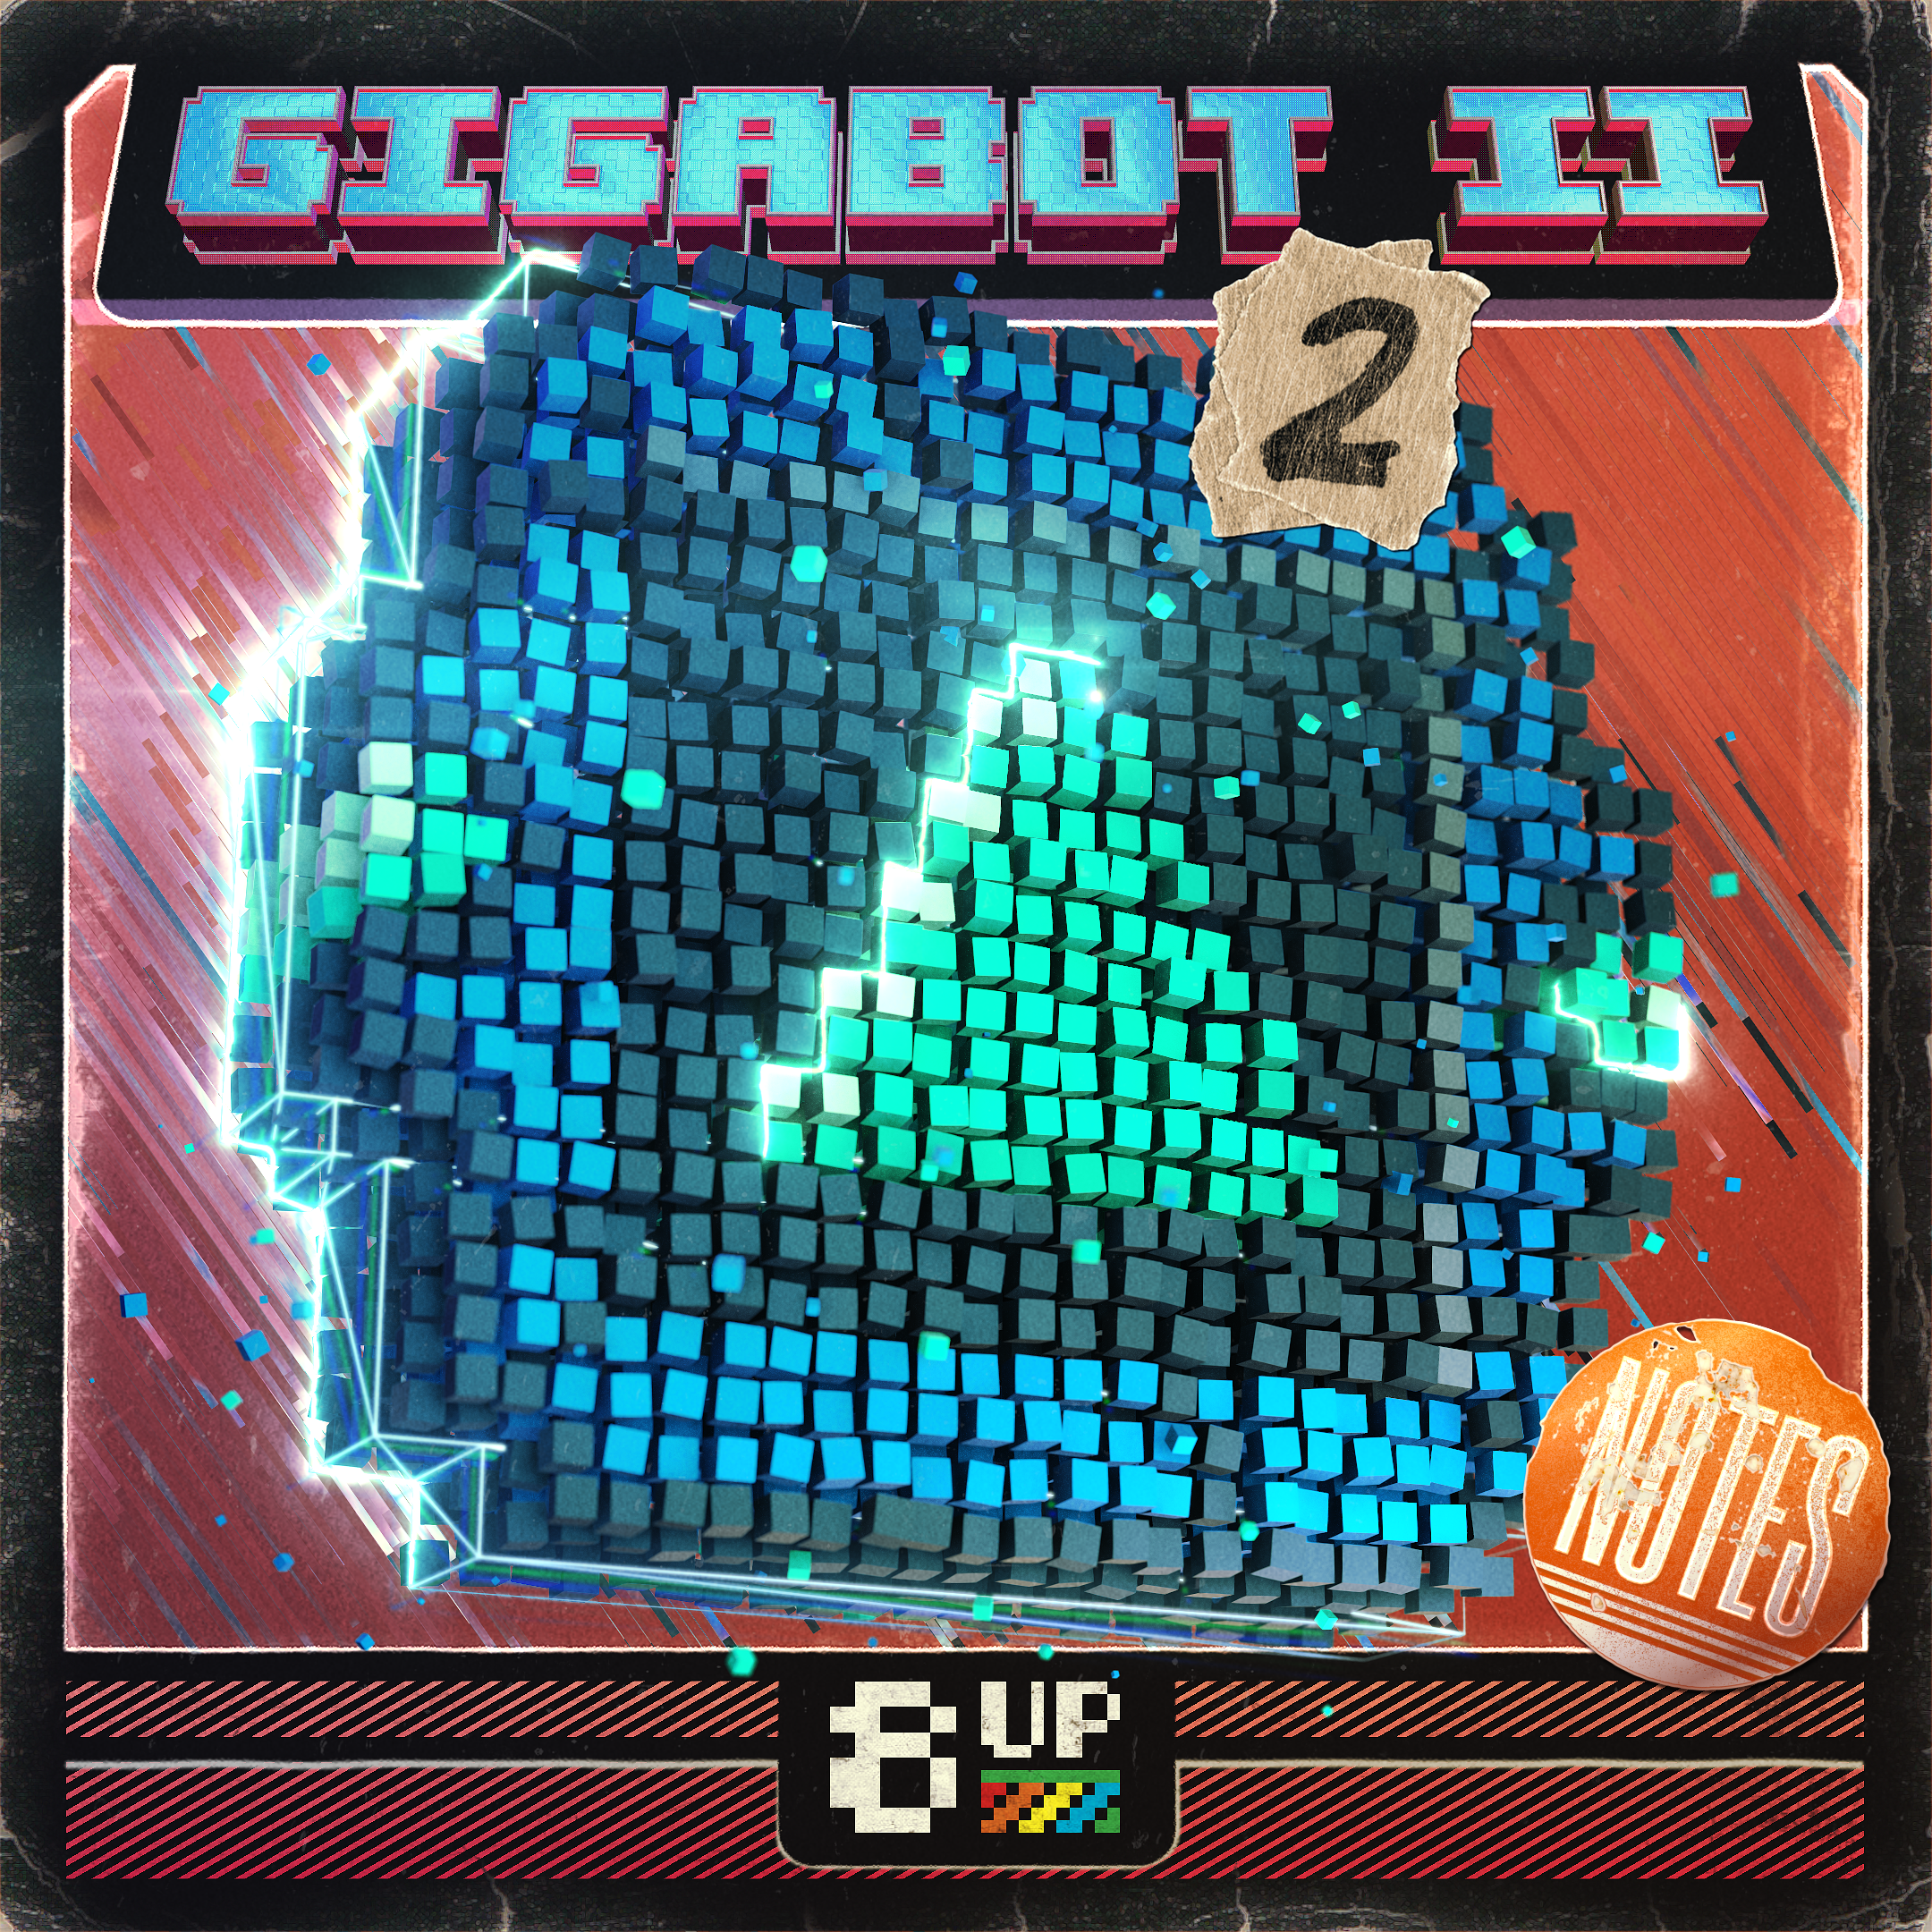 Gigabot 2 Notes 2 Packshot by 8UP